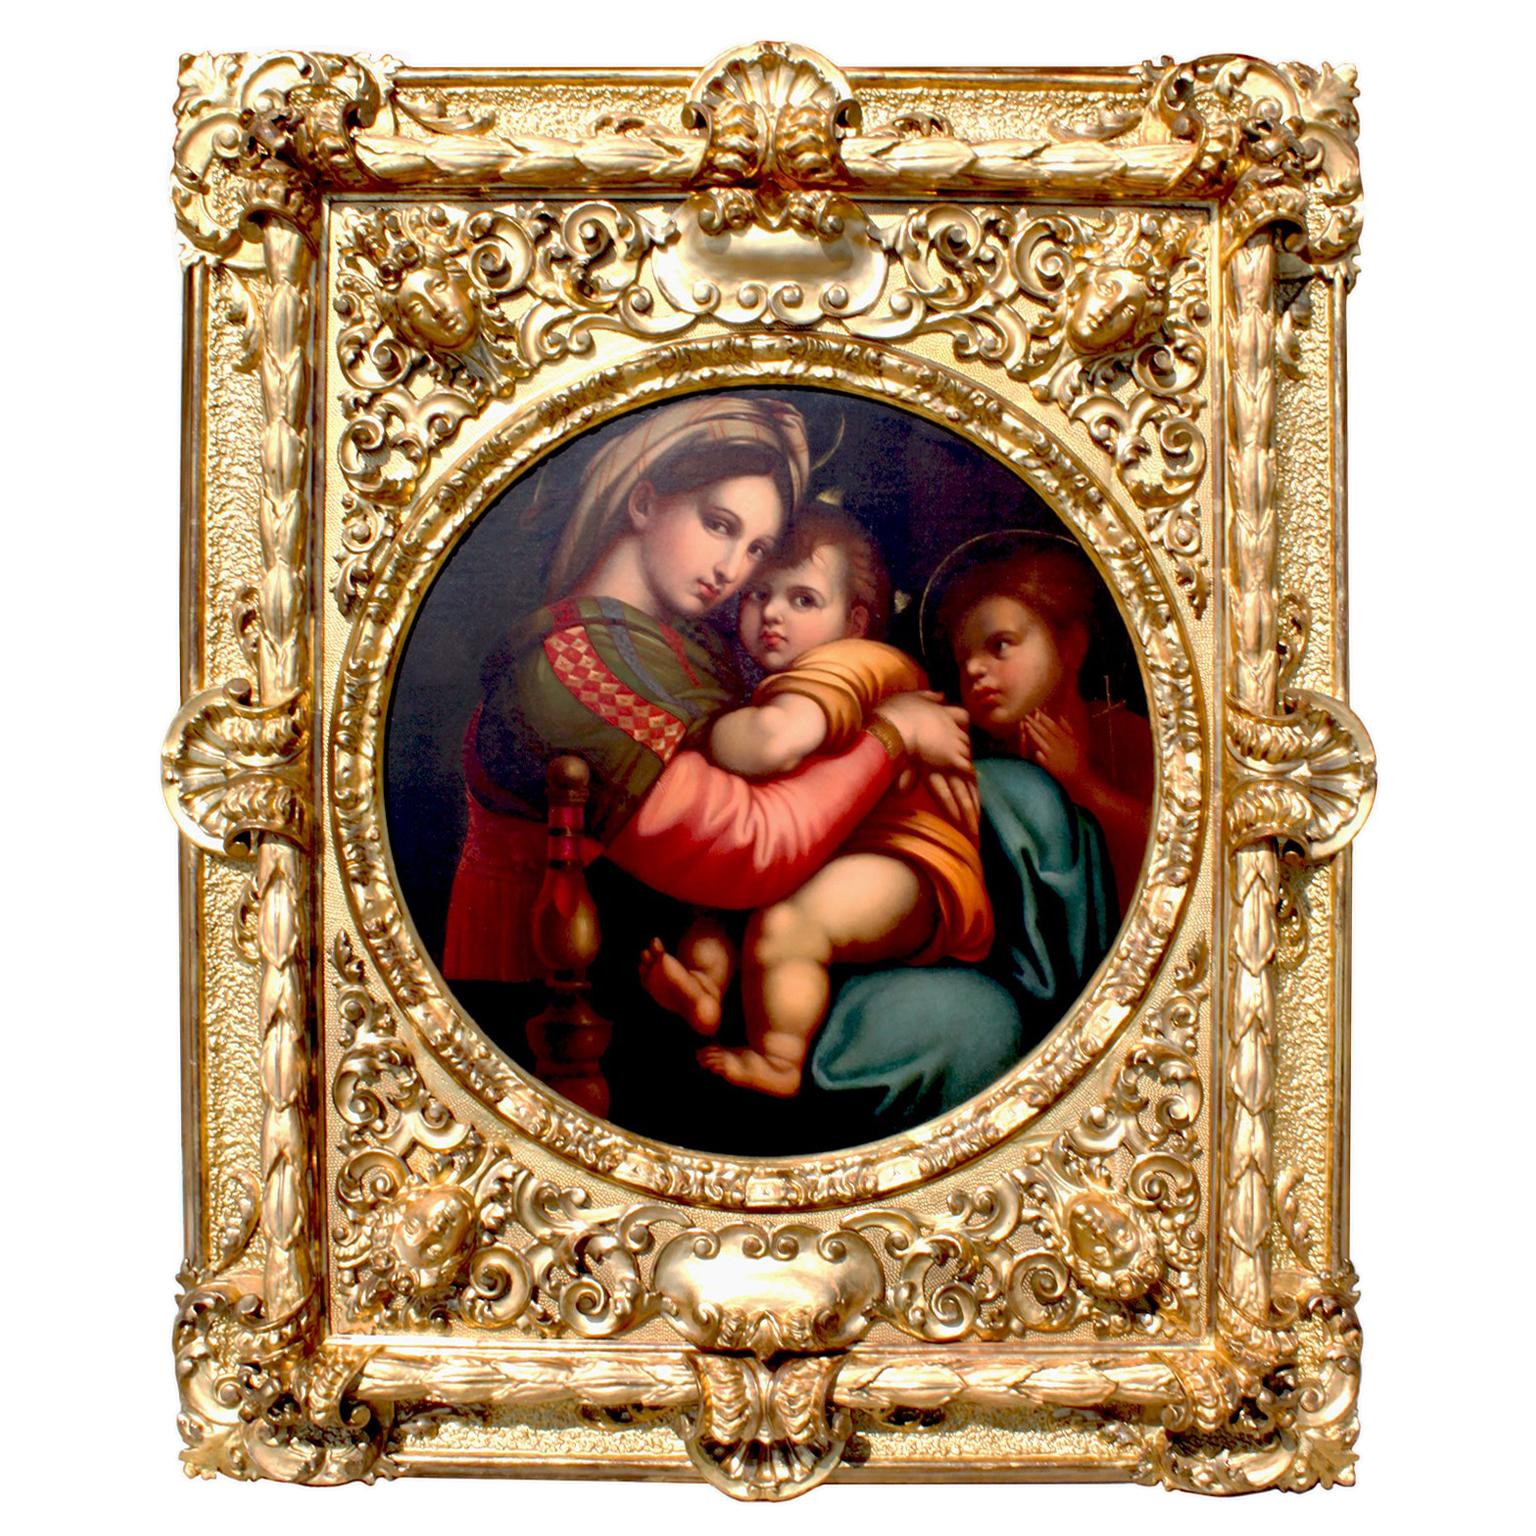 After Raffaello Sanzio 1483-1520 Raphael La Madonna della Seggiola Oil on Canvas